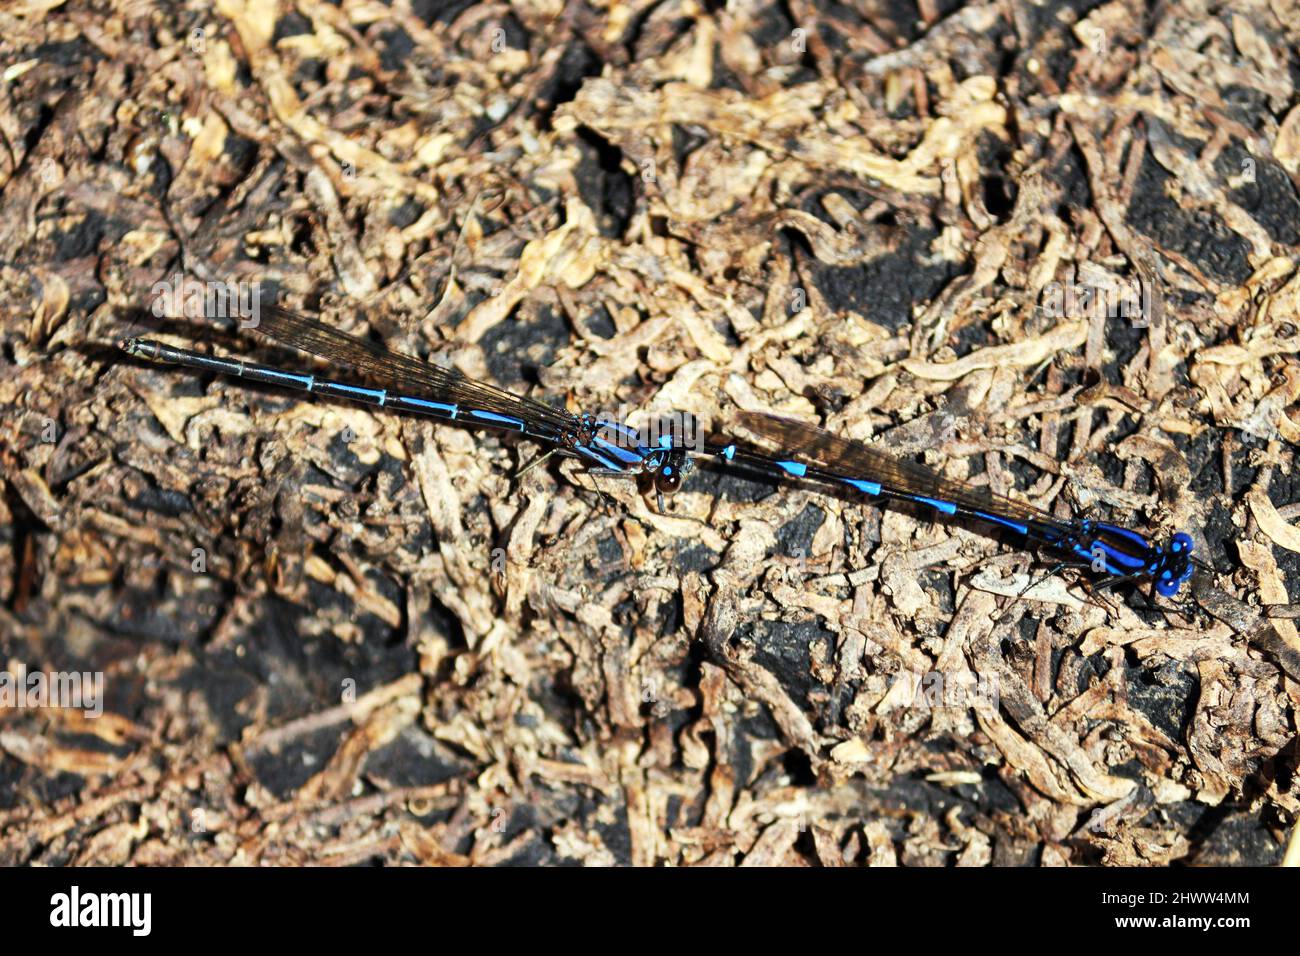 Dos libélulas encaramadas en el suelo de un río, se acercan para apareamiento, son libélulas en tonos de azul y negro. La foto está en ángulo fr Foto de stock